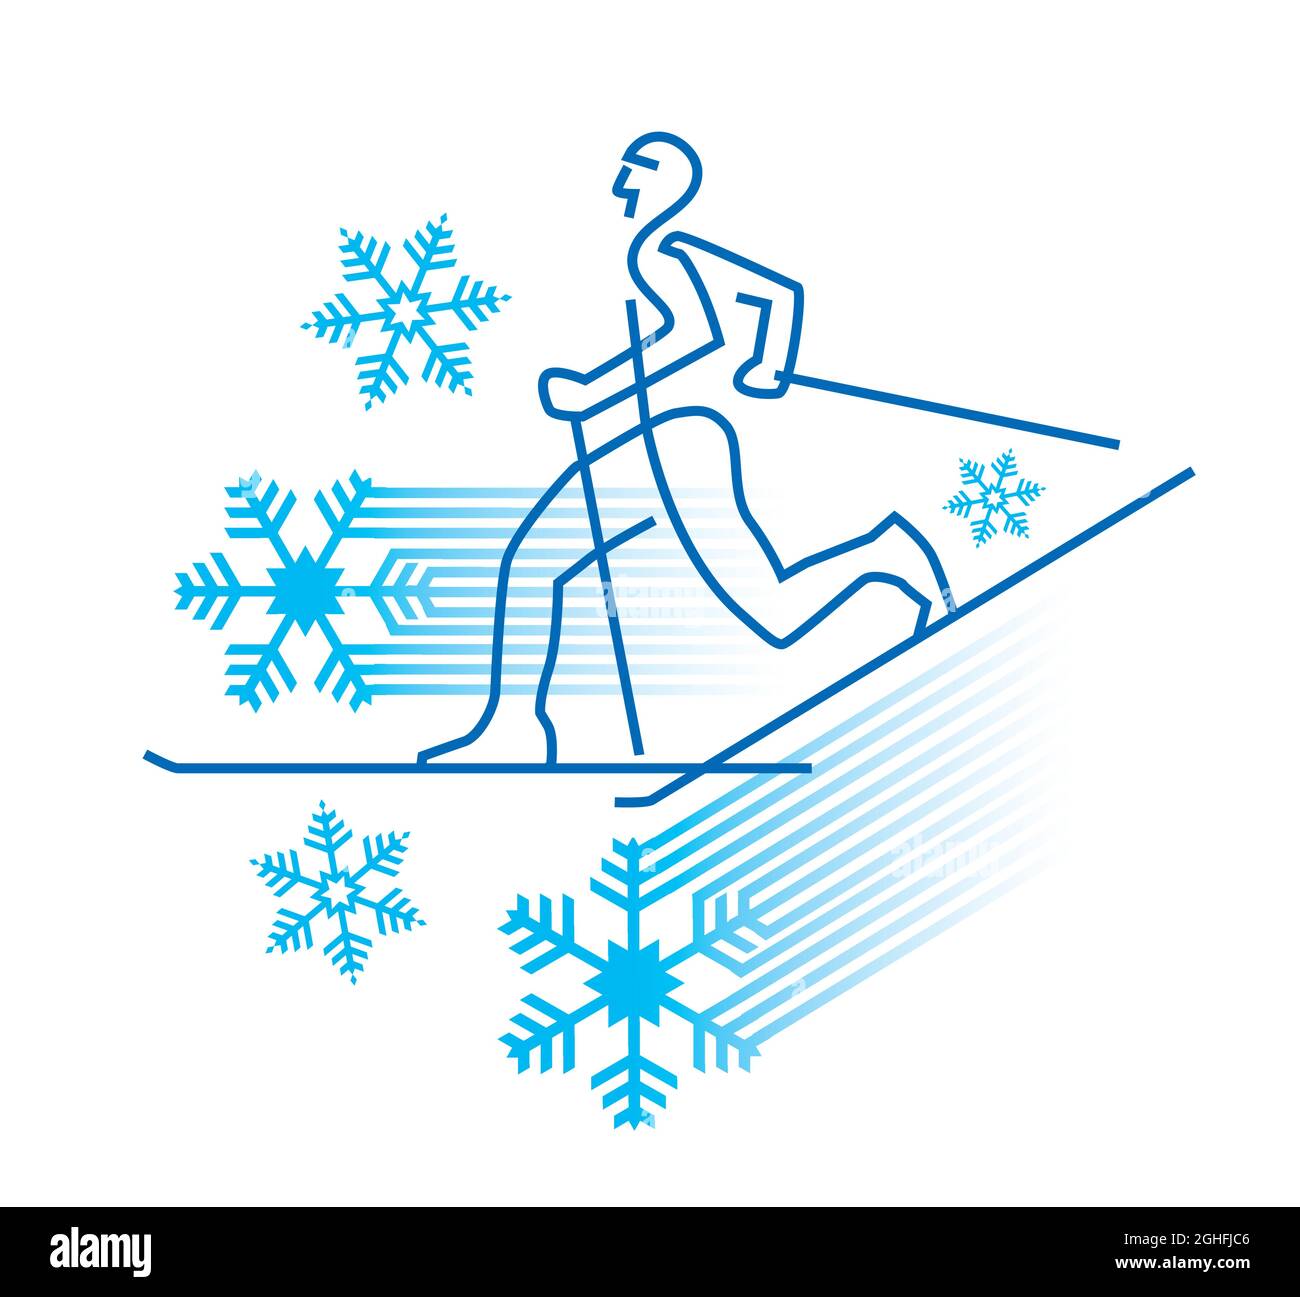 Sciatore di fondo con simboli di fiocco di neve. Illustrazione decorativa dei concorrenti dello sci nordico. Concetto di cera da sci. Vettore disponibile. Illustrazione Vettoriale